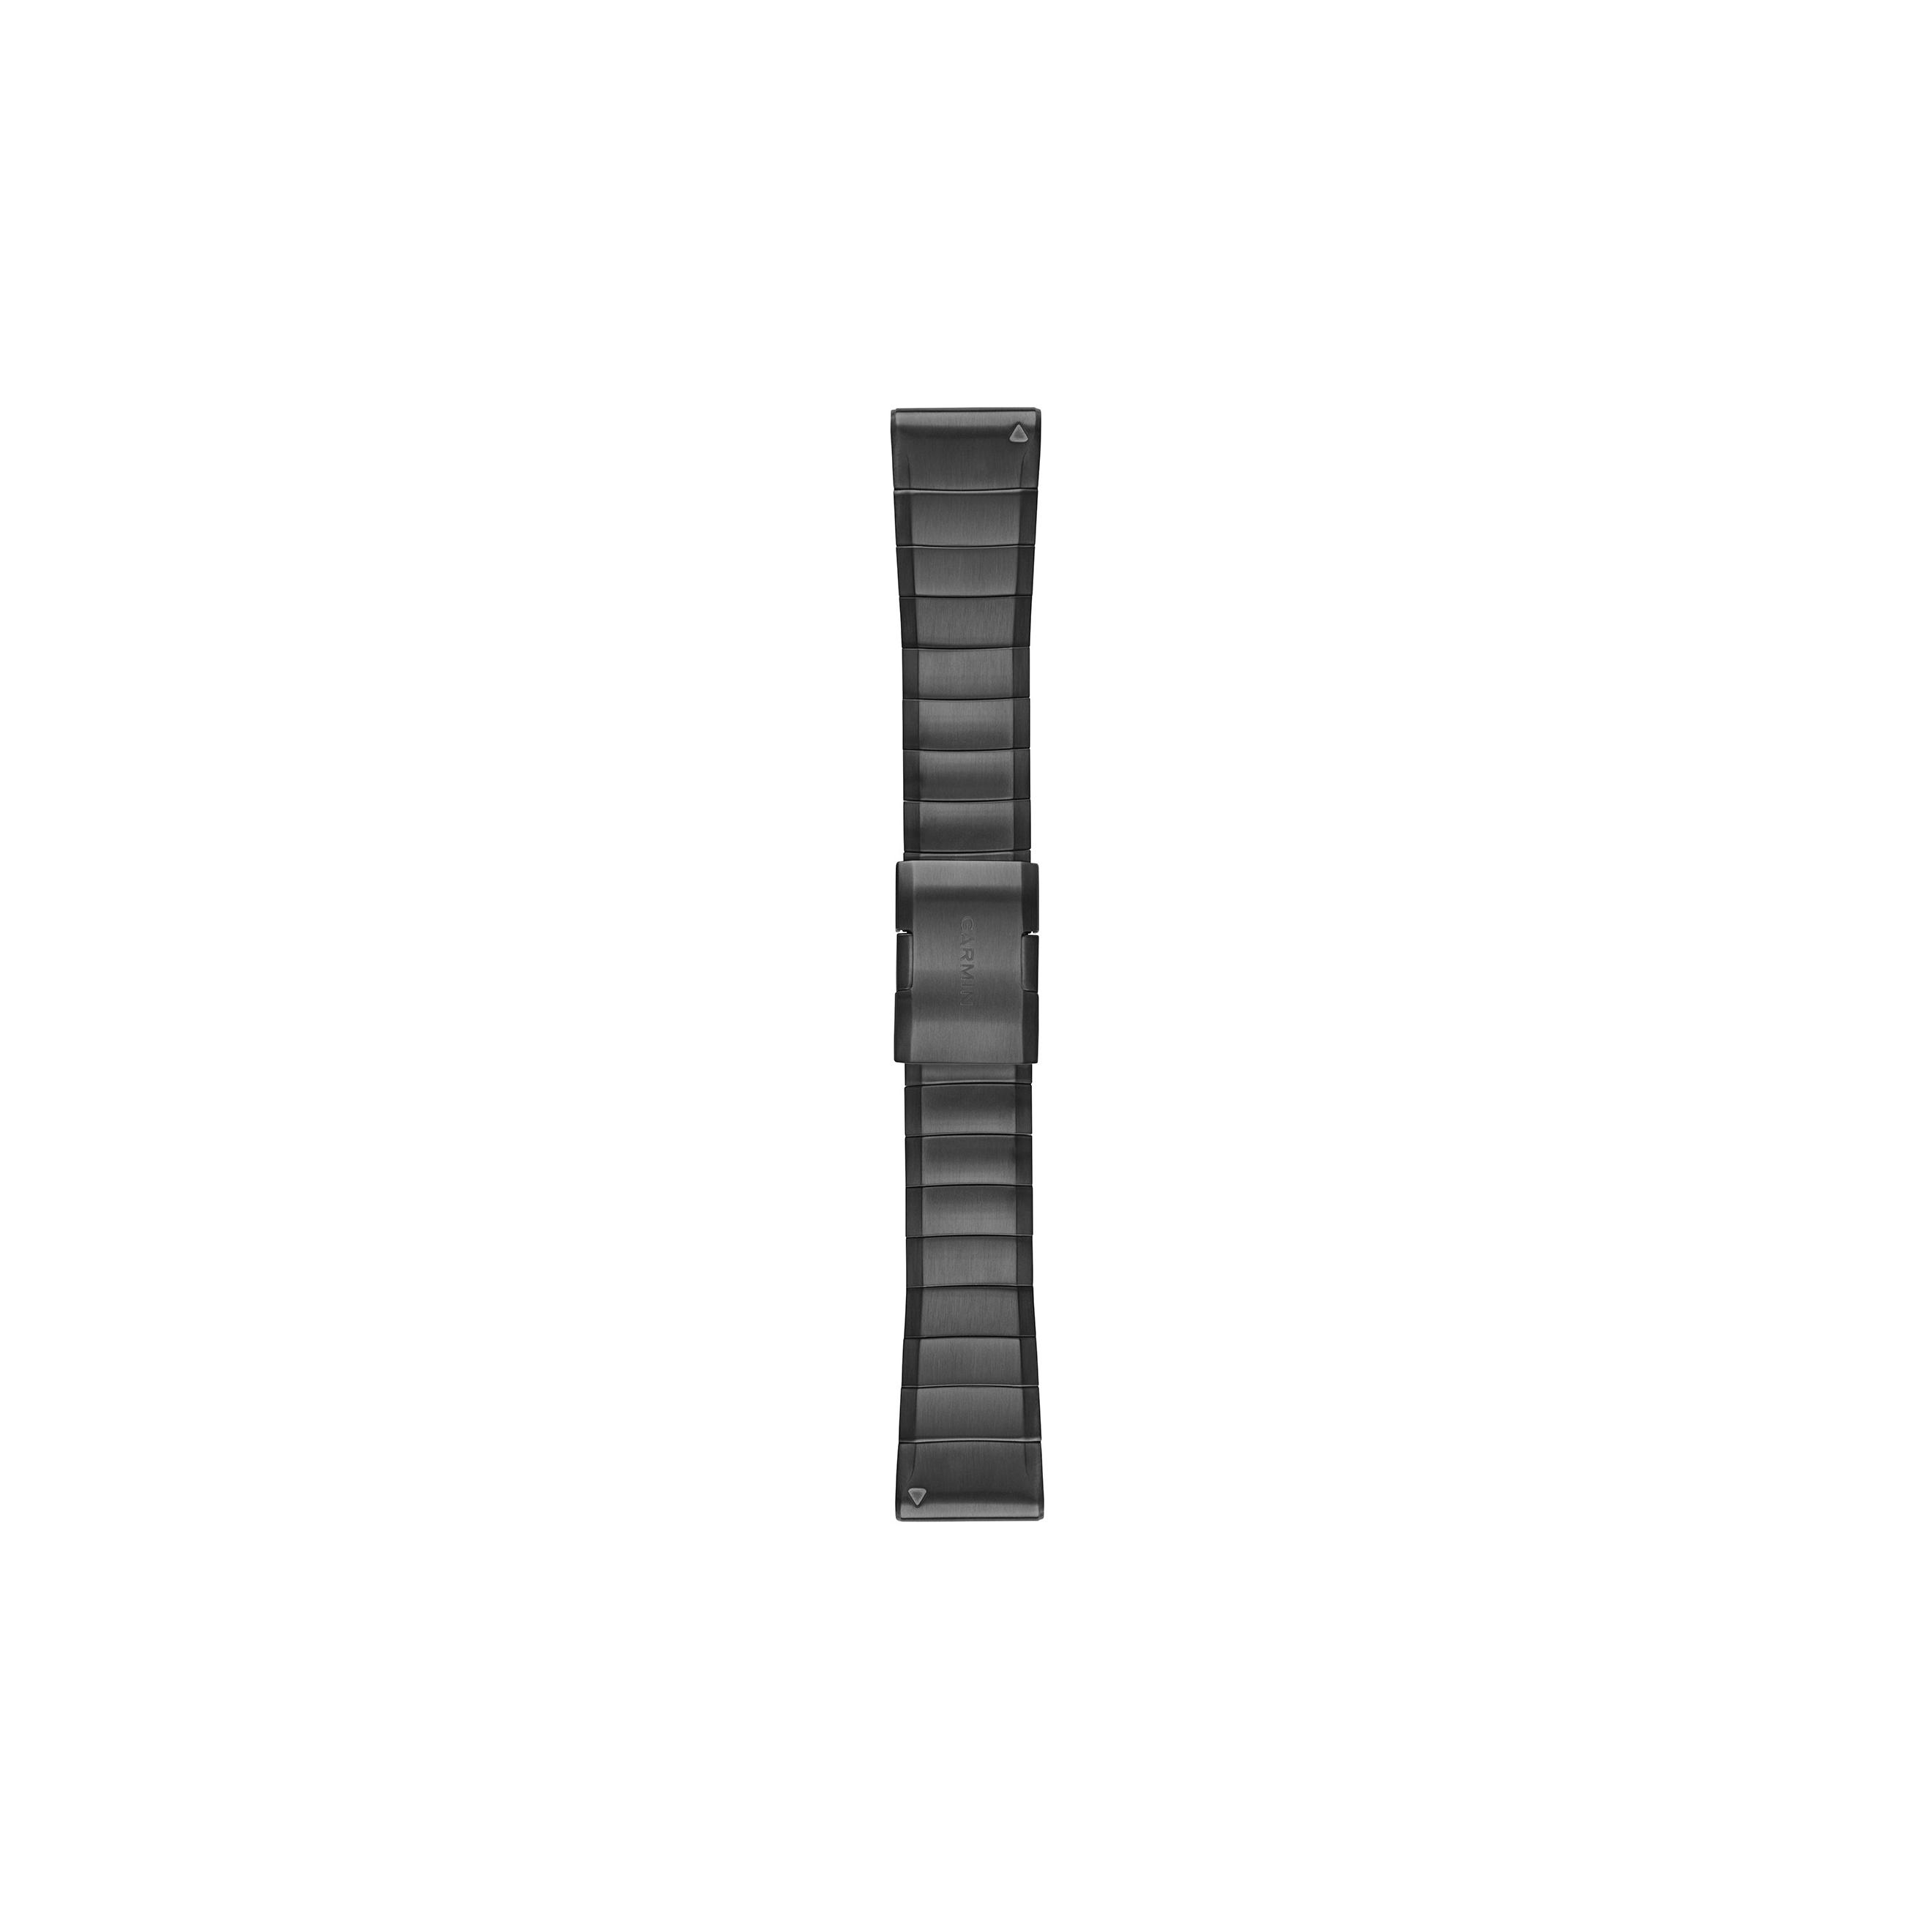 Ремешки для часов Garmin QUICKFIT 22/26. Титановый браслет для часов Garmin Fenix 5/6/7, Epix 2, QUICKFIT, 22мм, черный. Гармин 601 ремешок. Ремень Гармин 26 мм.